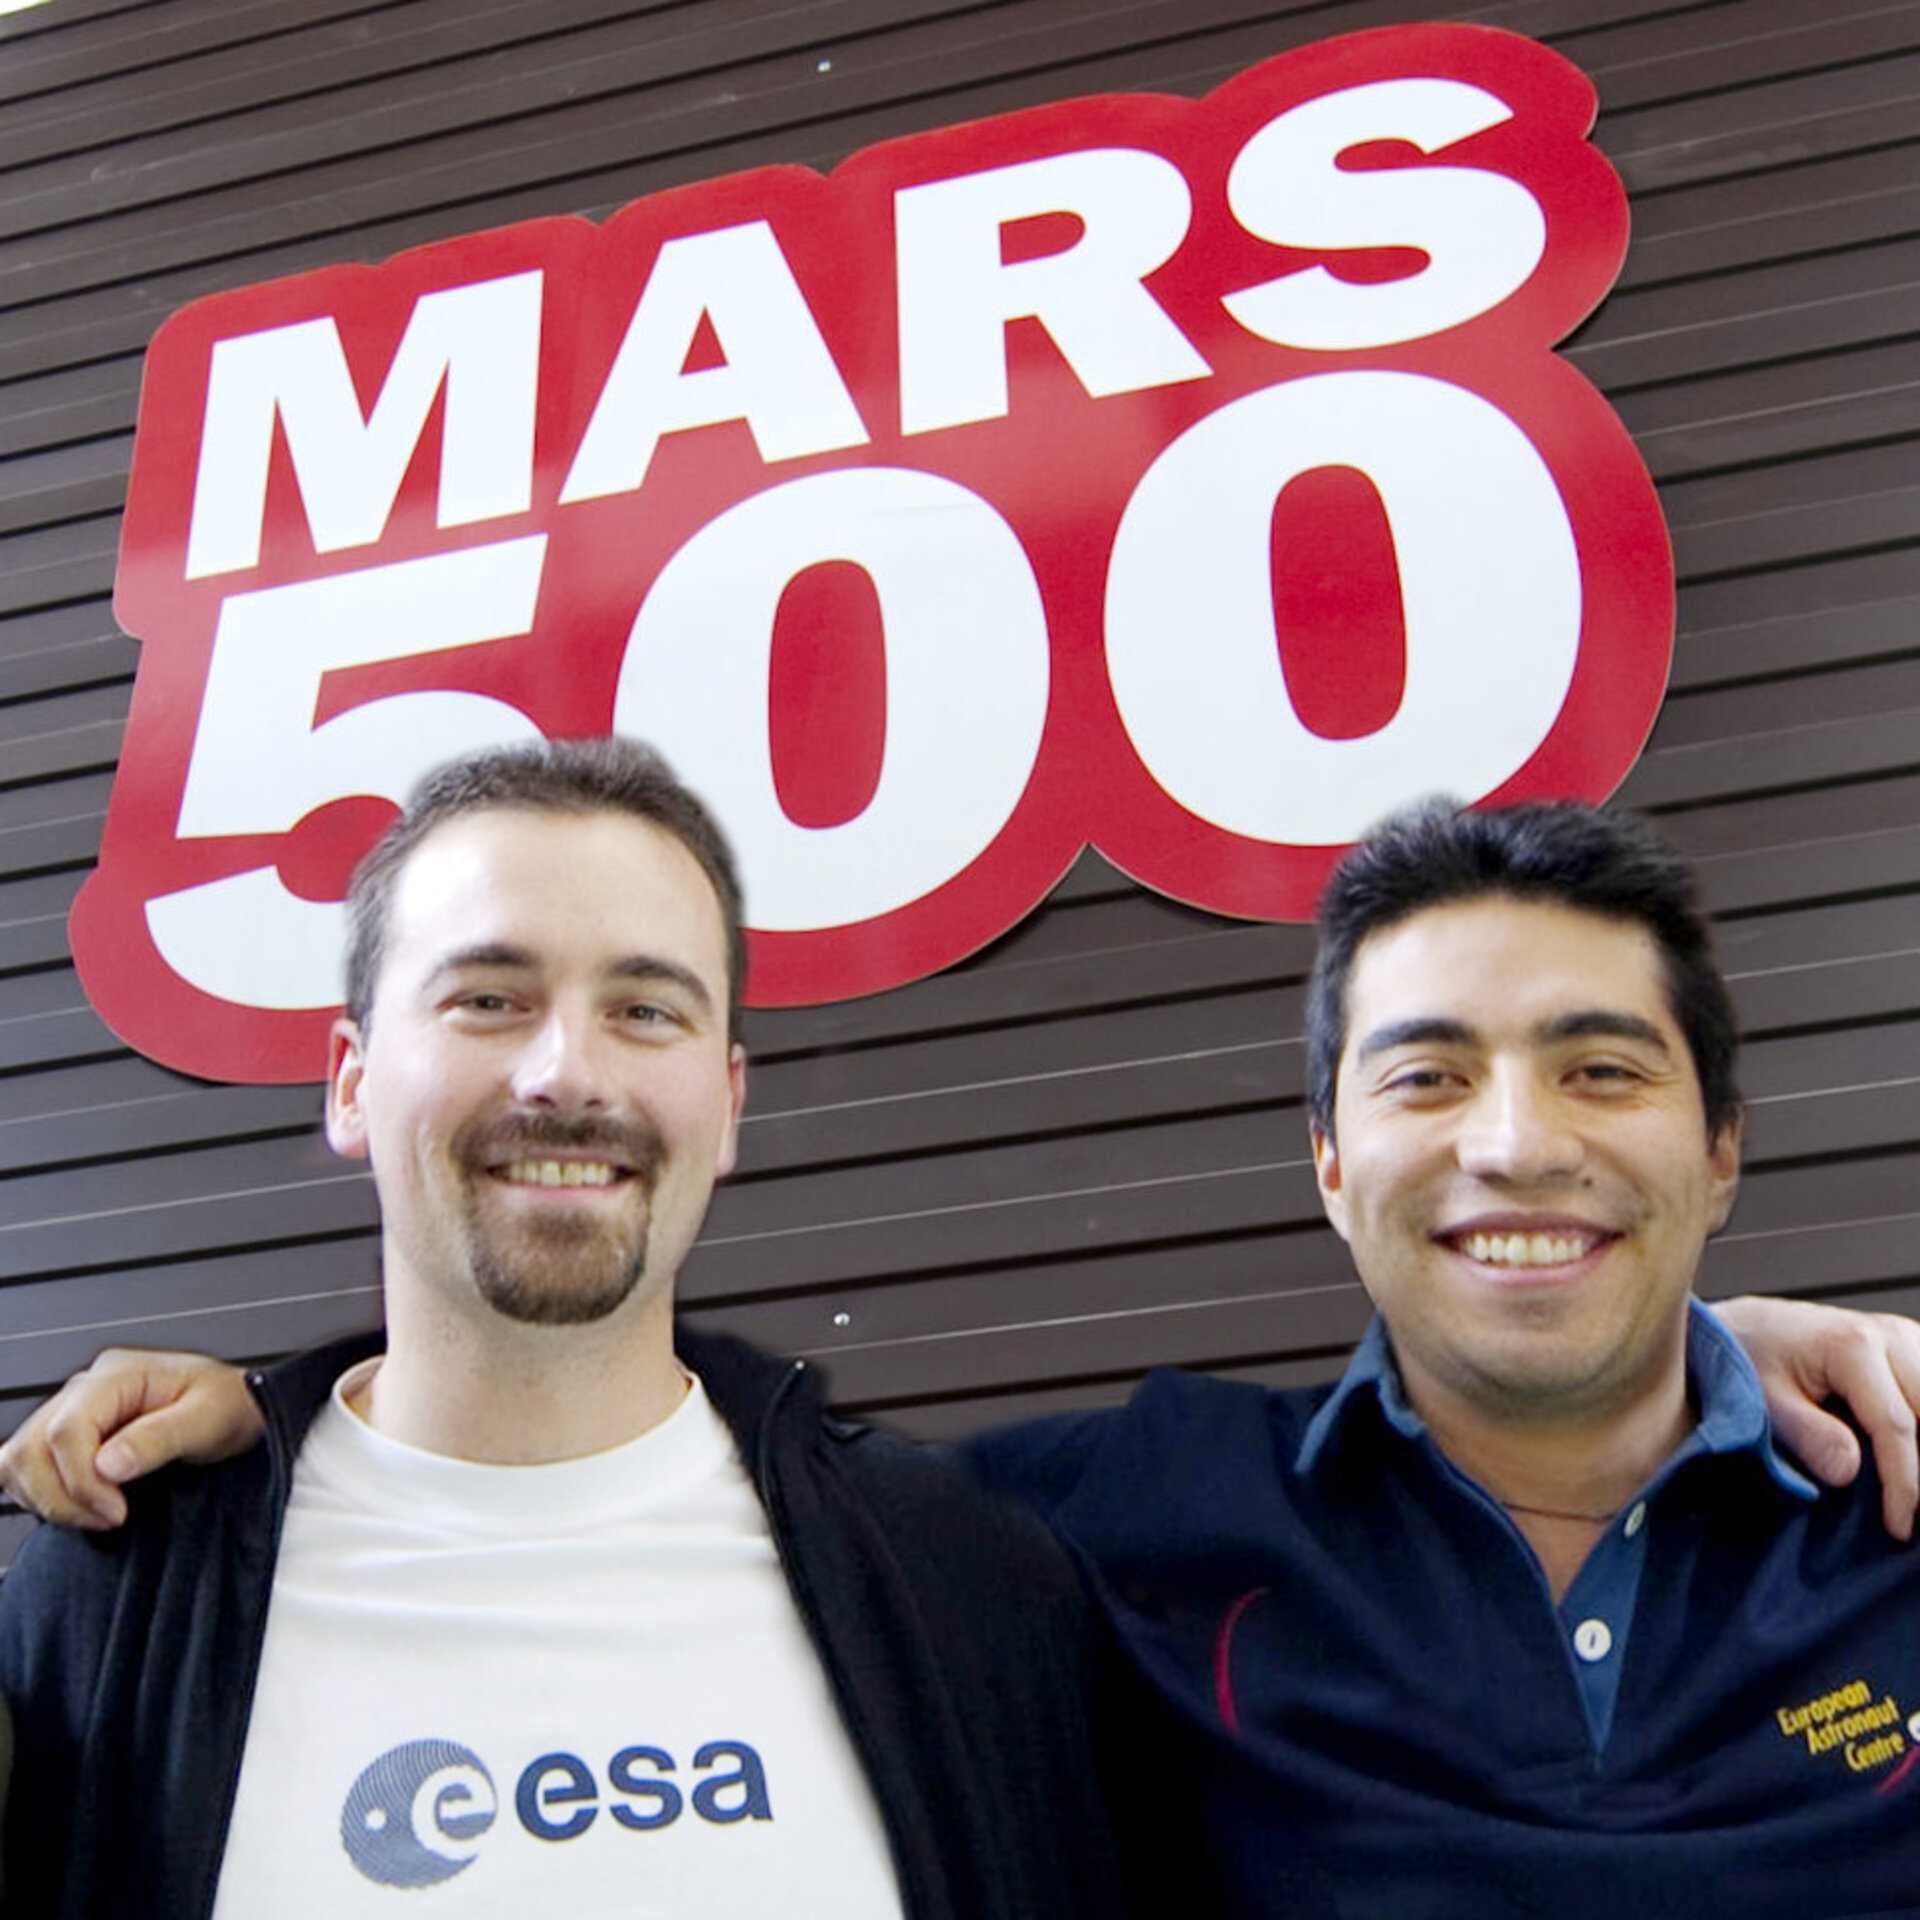 Diego Urbina e Charles Romain davanti a Mars500